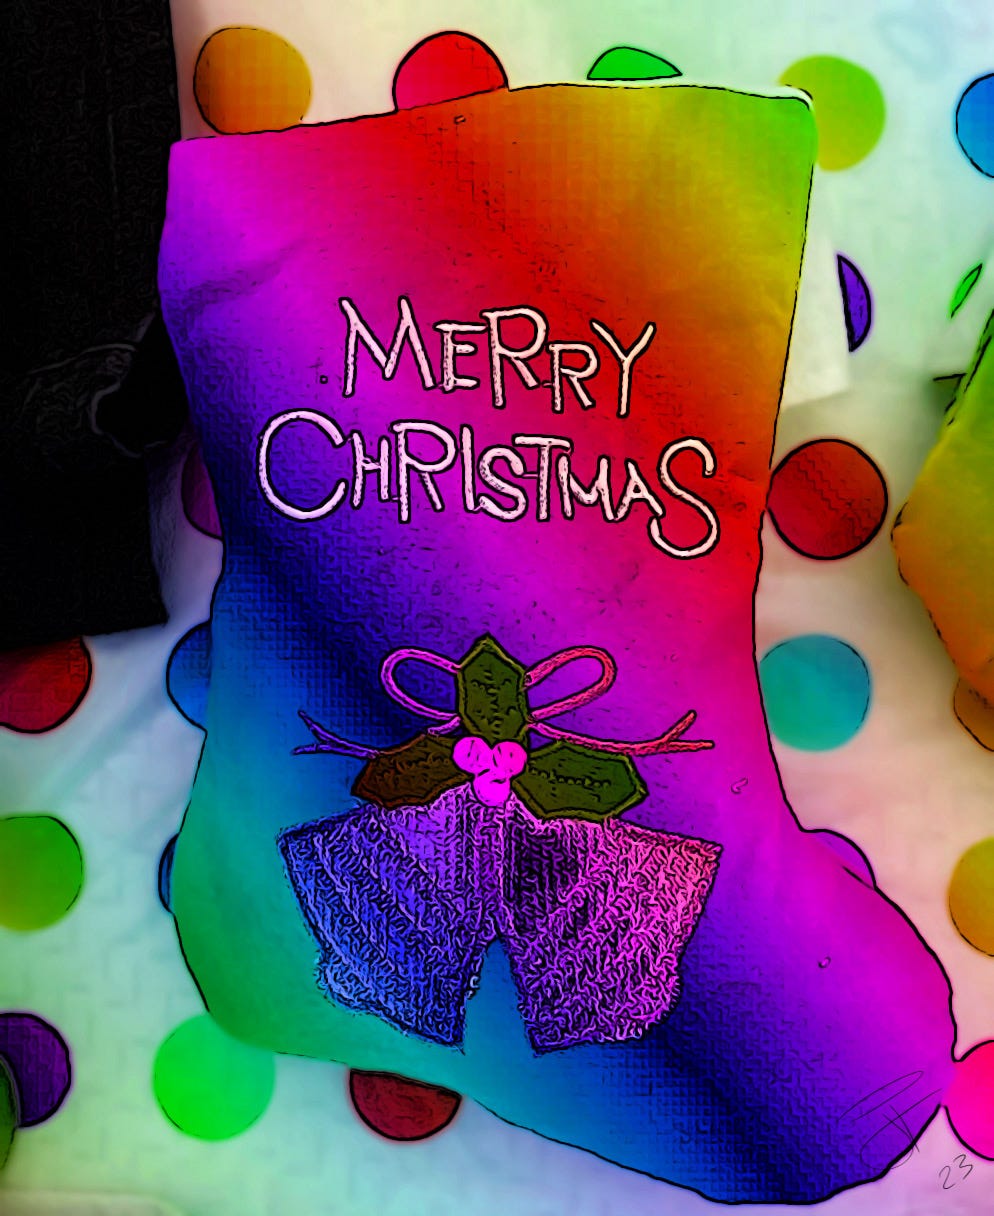 Christmas stocking rainbow polka dots merry Christmas